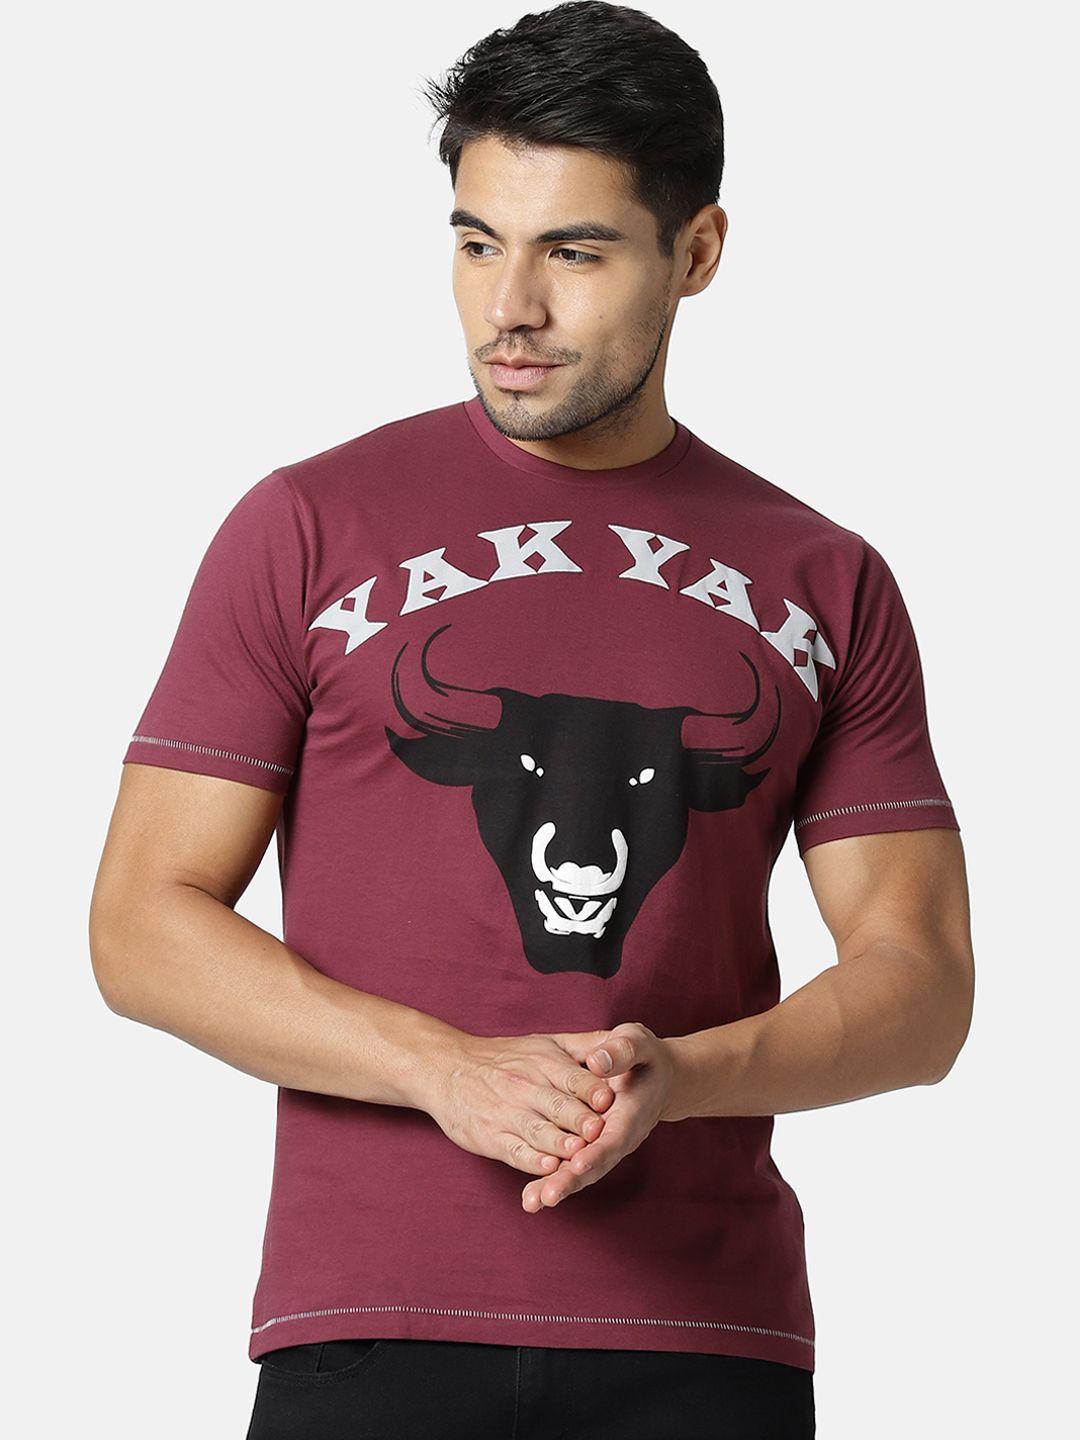 yak yak men magenta printed round neck t-shirt